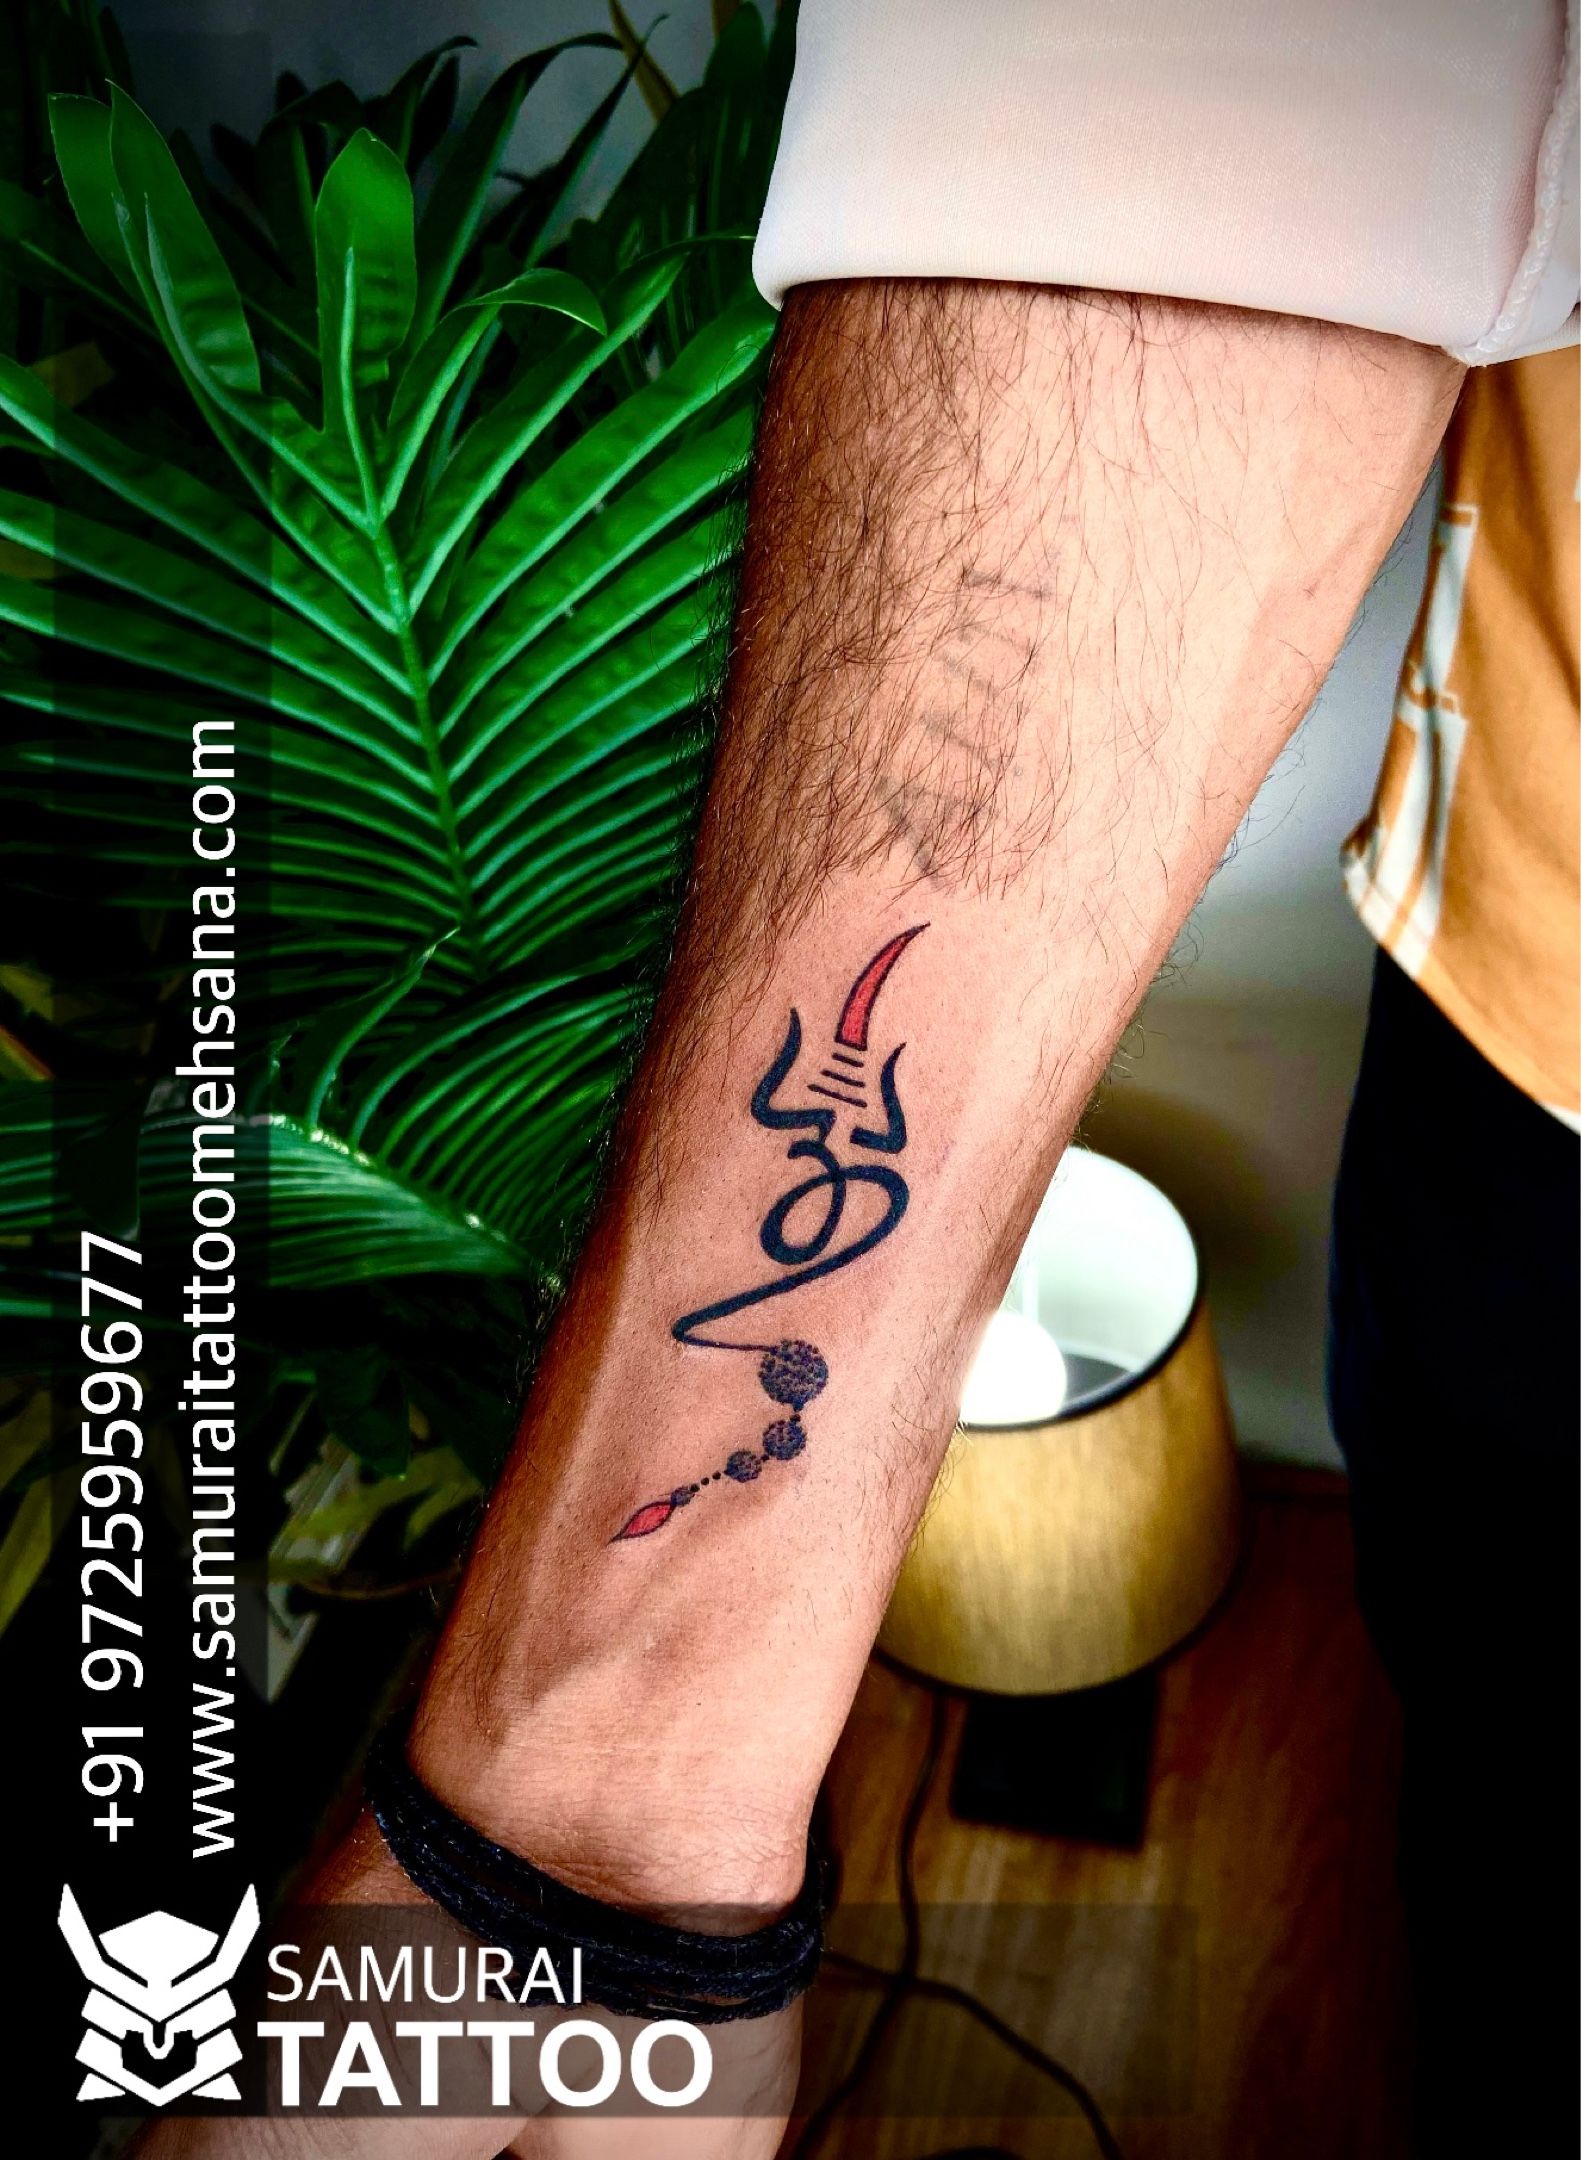 Temporary Tattoowala Temporary Tattoowala Ganesh Ji With Trishul Tattoo  Temporary Tattoo Pack of 4 - Price in India, Buy Temporary Tattoowala  Temporary Tattoowala Ganesh Ji With Trishul Tattoo Temporary Tattoo Pack of